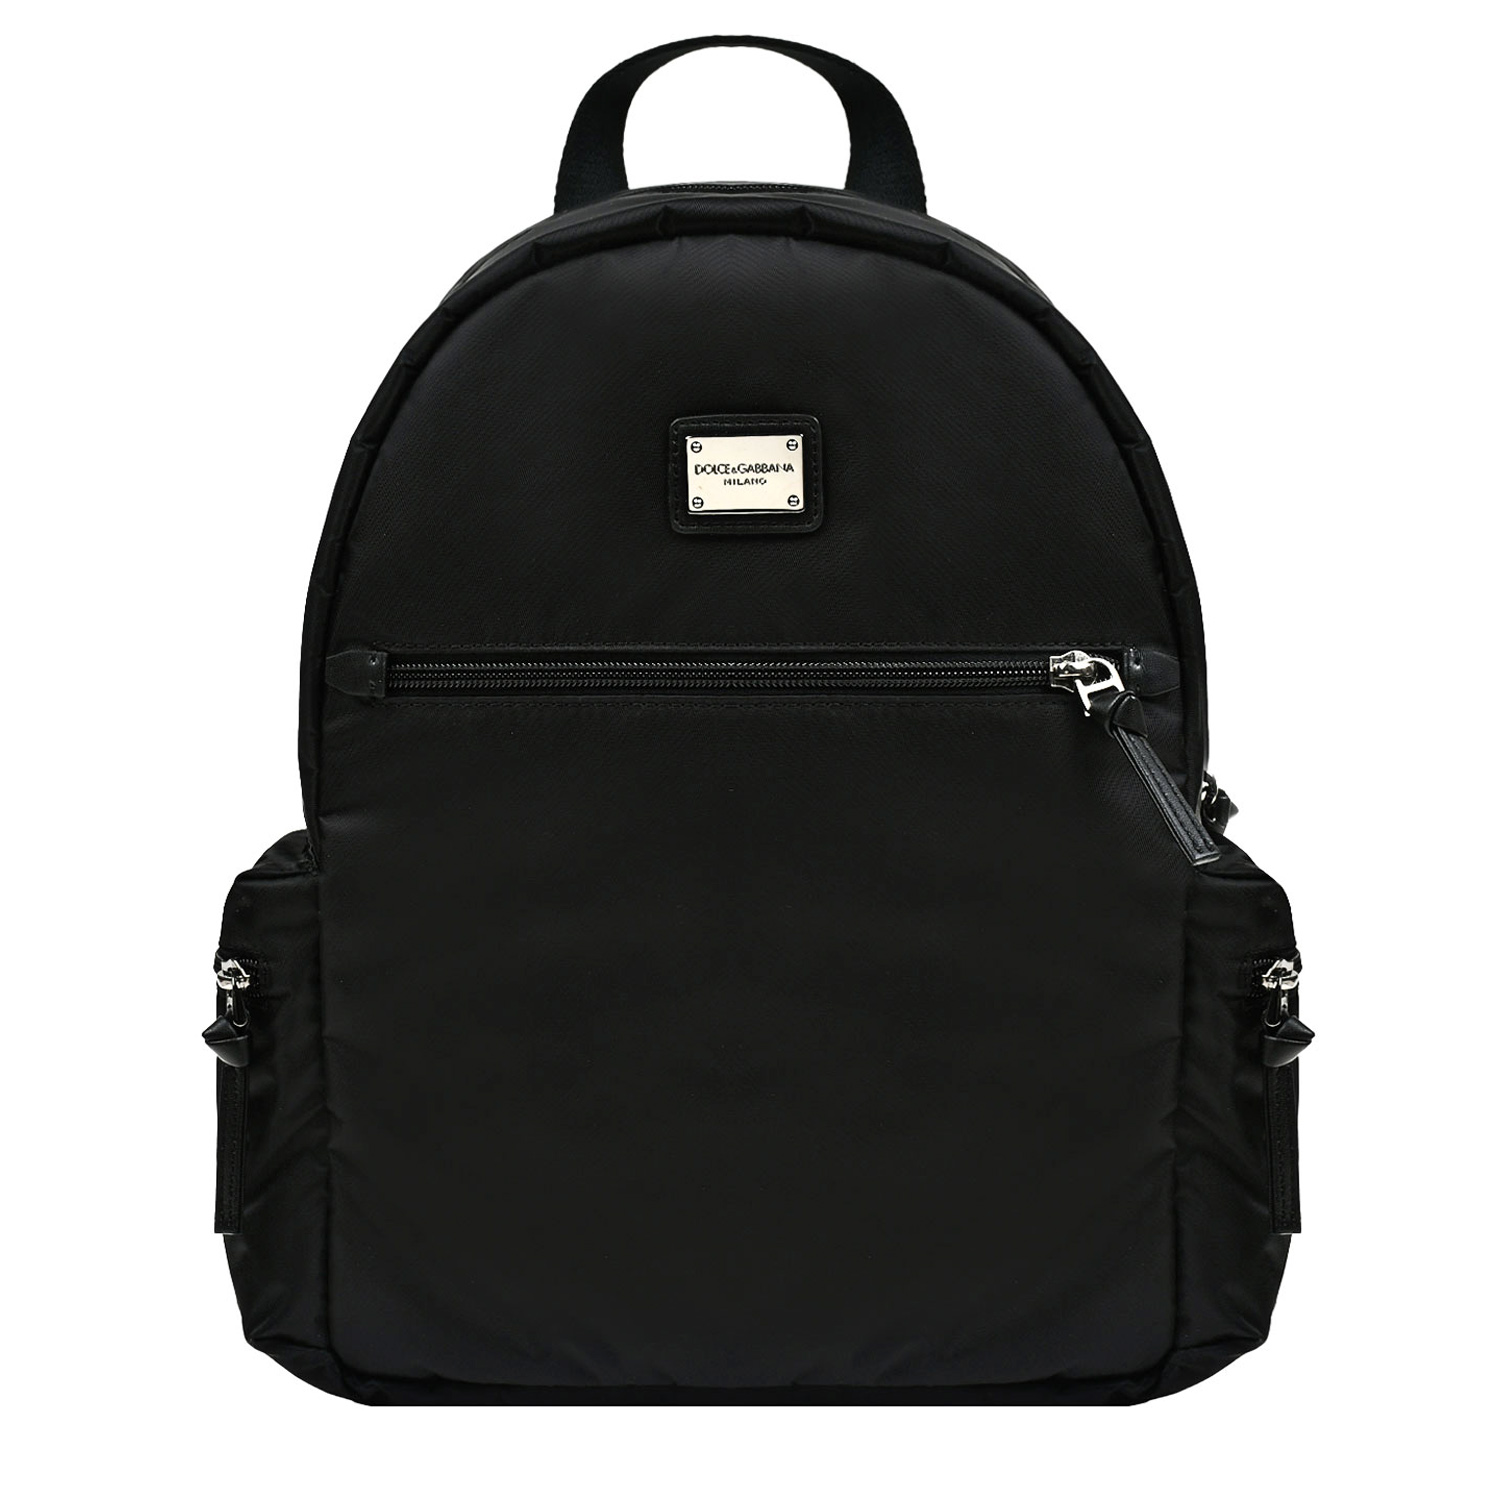 Рюкзак с боковыми карманами Dolce&Gabbana, размер unica, цвет черный - фото 1